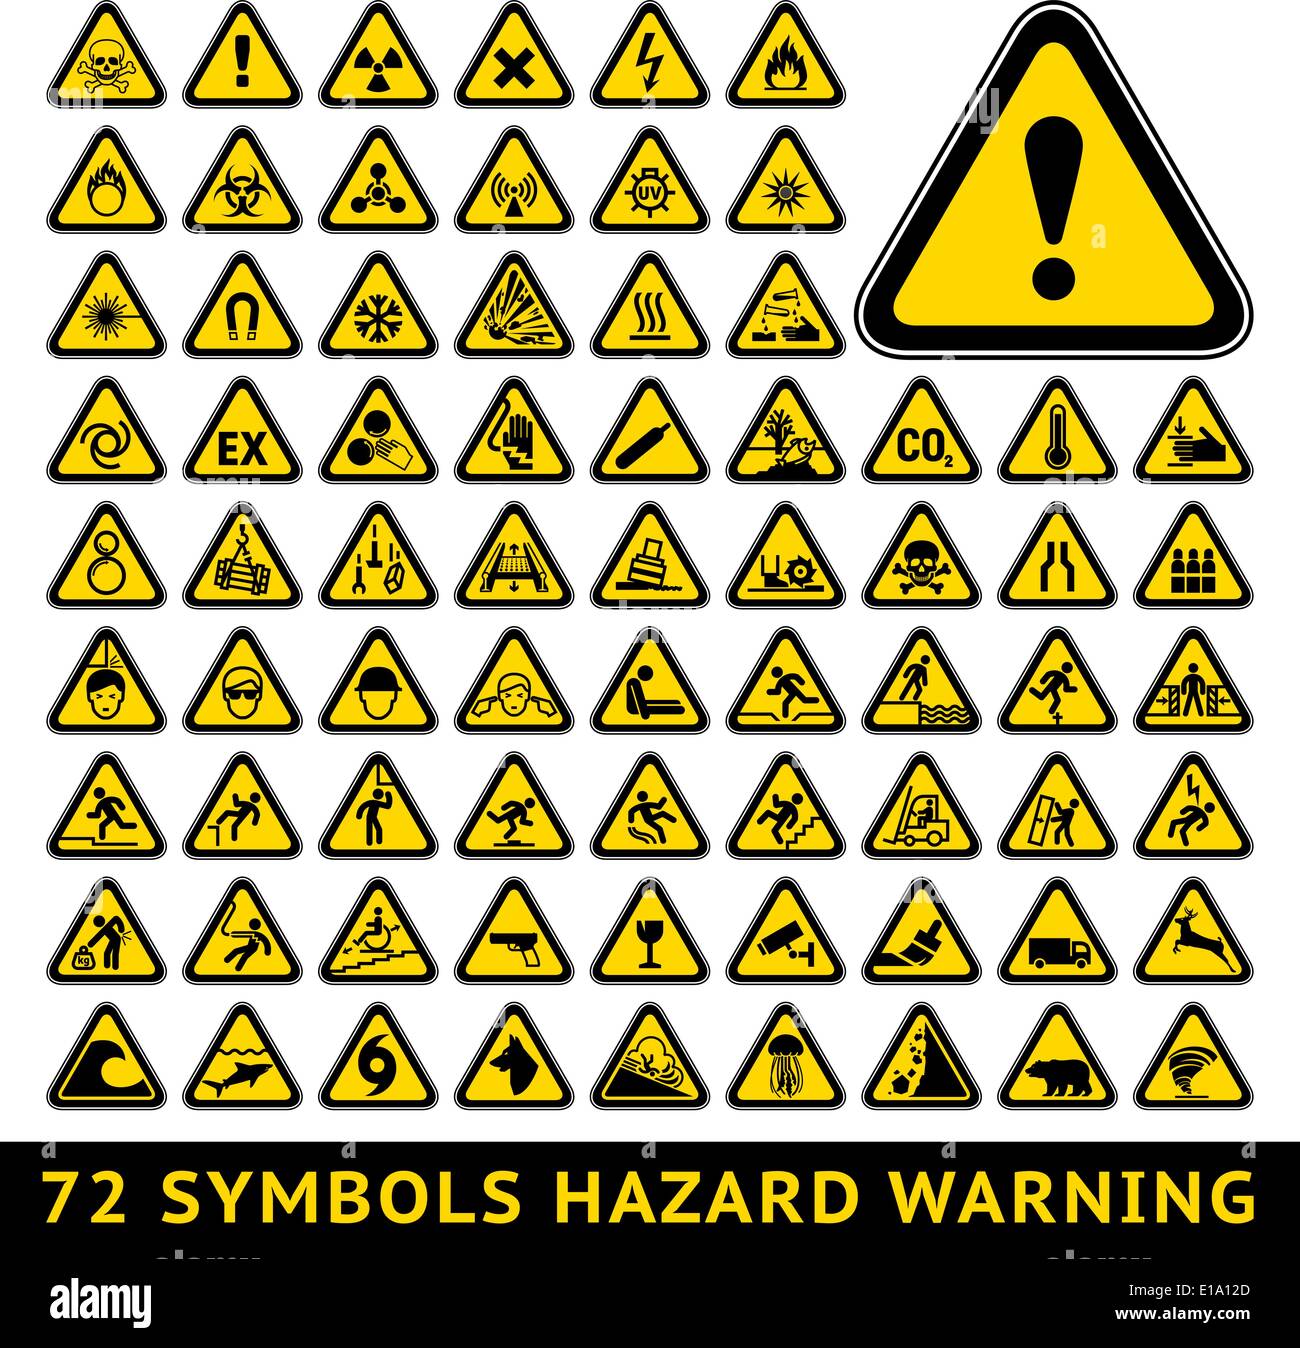 72 symbols triangular warning hazard. Big yellow set Stock Vector